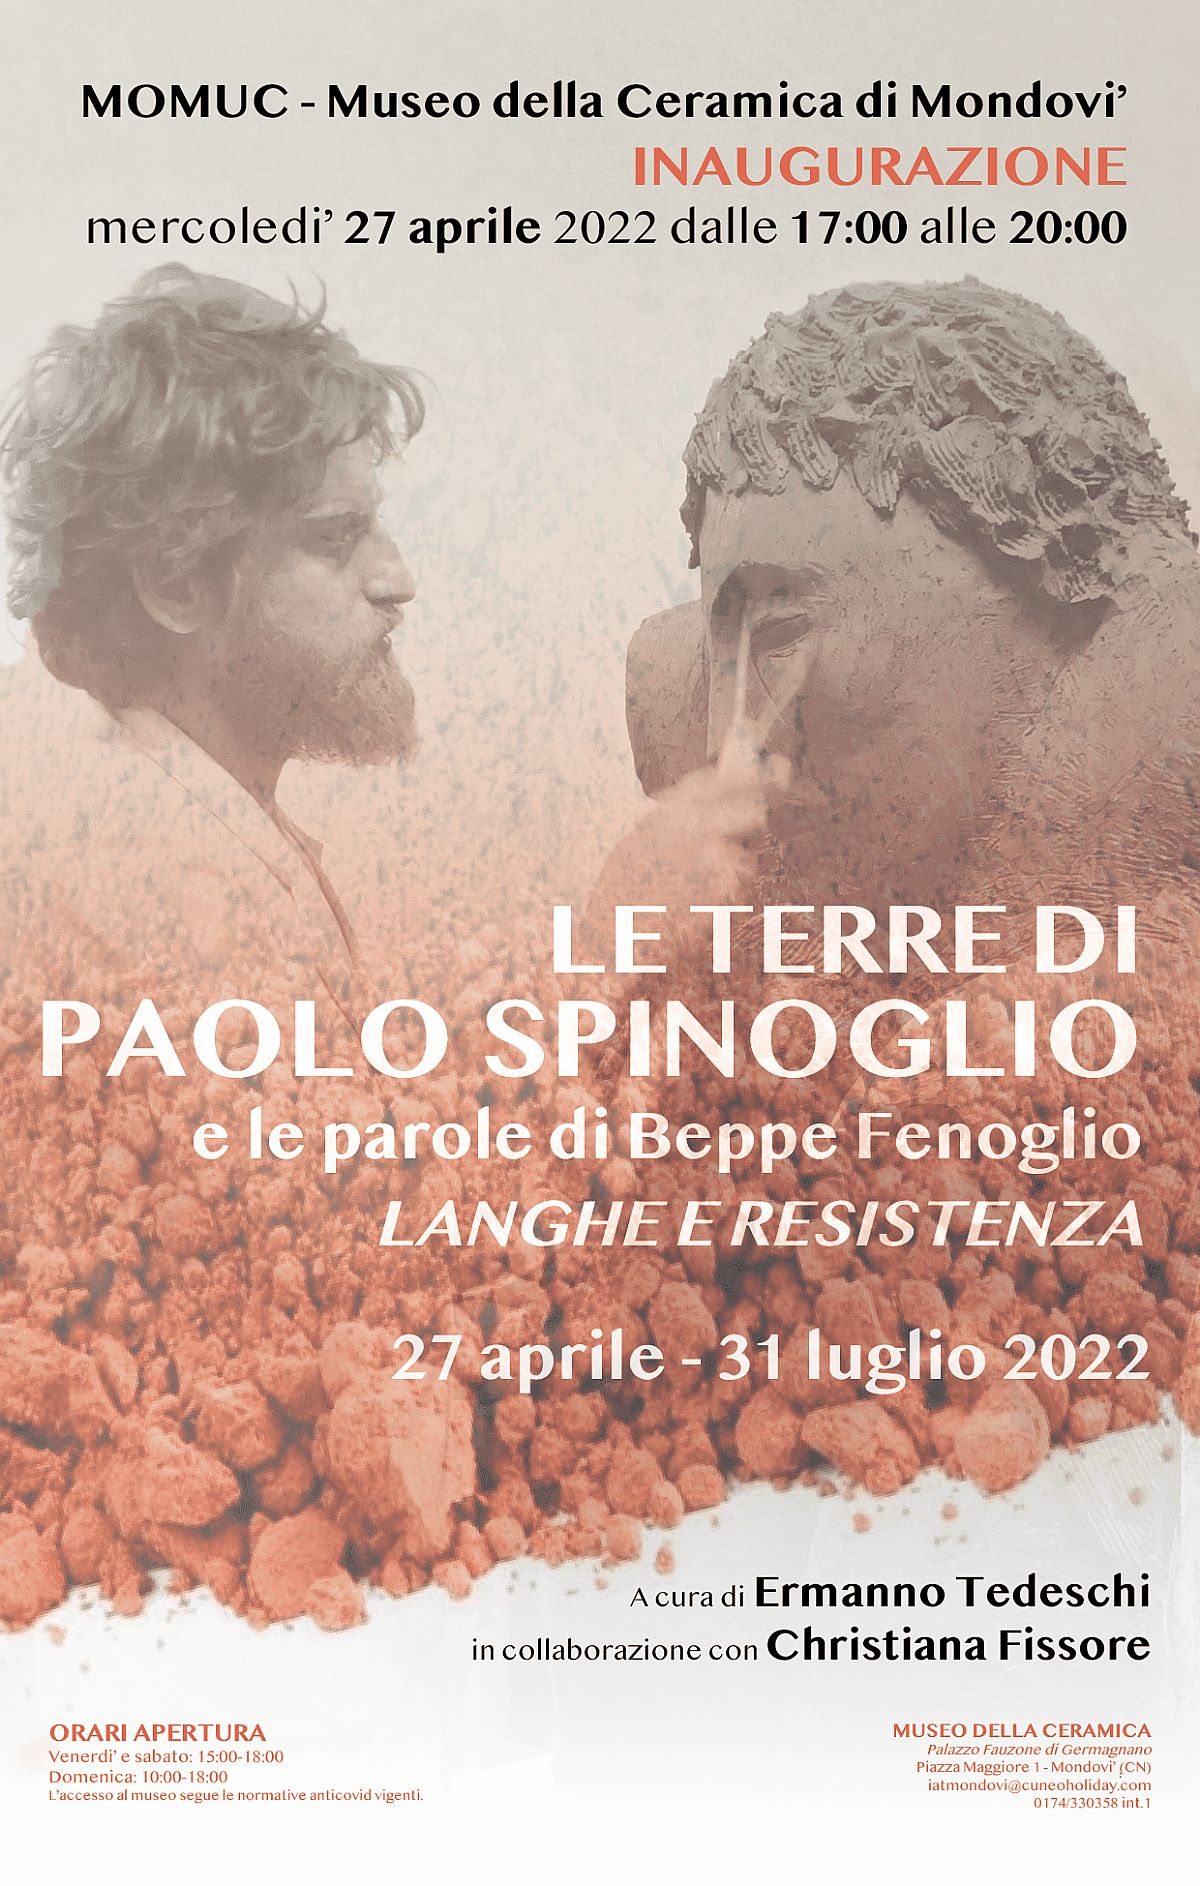 Le terre di Paolo Spinoglio e le parole di Beppe Fenoglio LANGHE E RESISTENZA